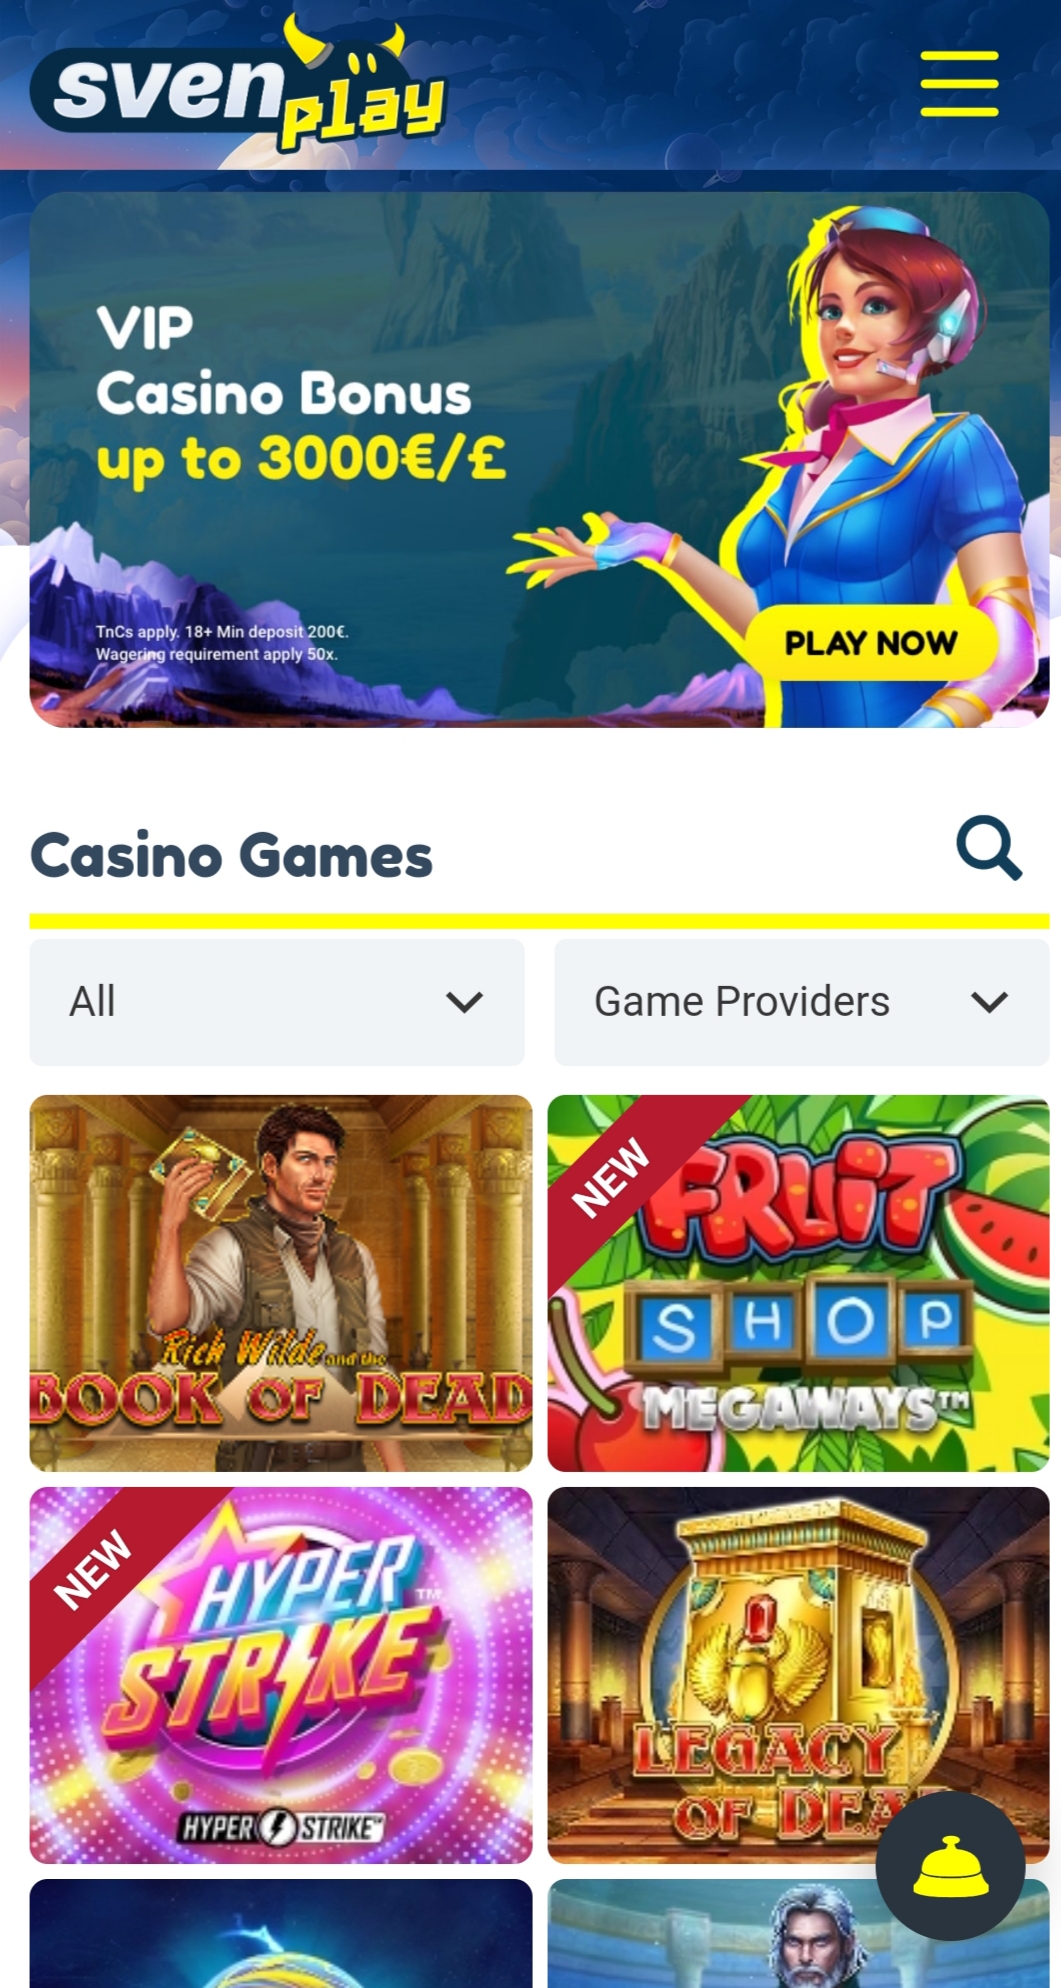 SvenPlay Casino Mobile Review